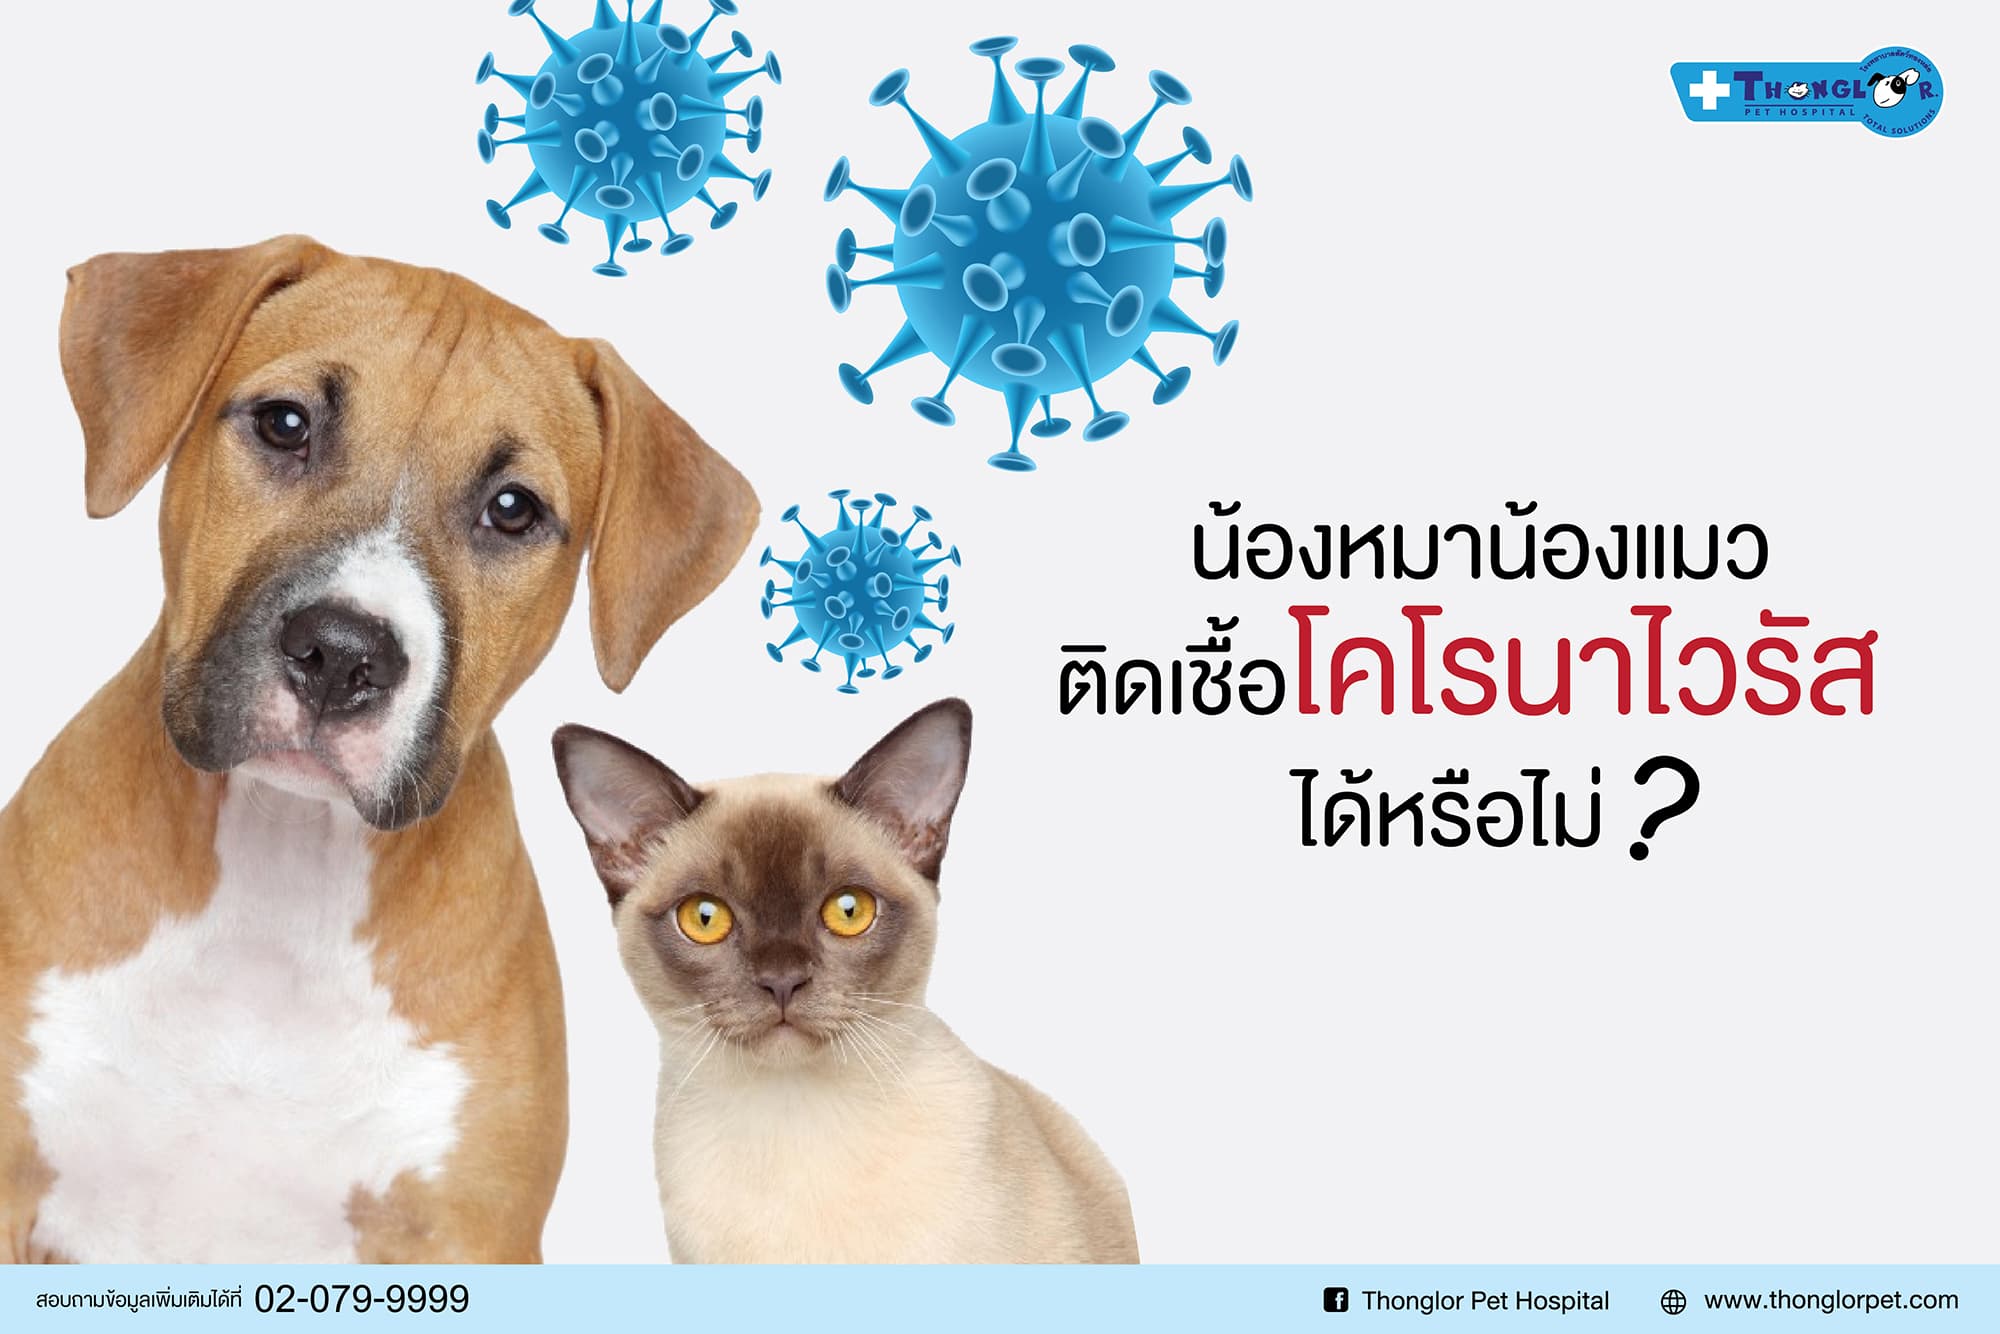 หมาแมวติดเชื้อโคโรนาไวรัสได้หรือไม่?,โคโรนาไวรัสหมาแมว | Thonglor Pet